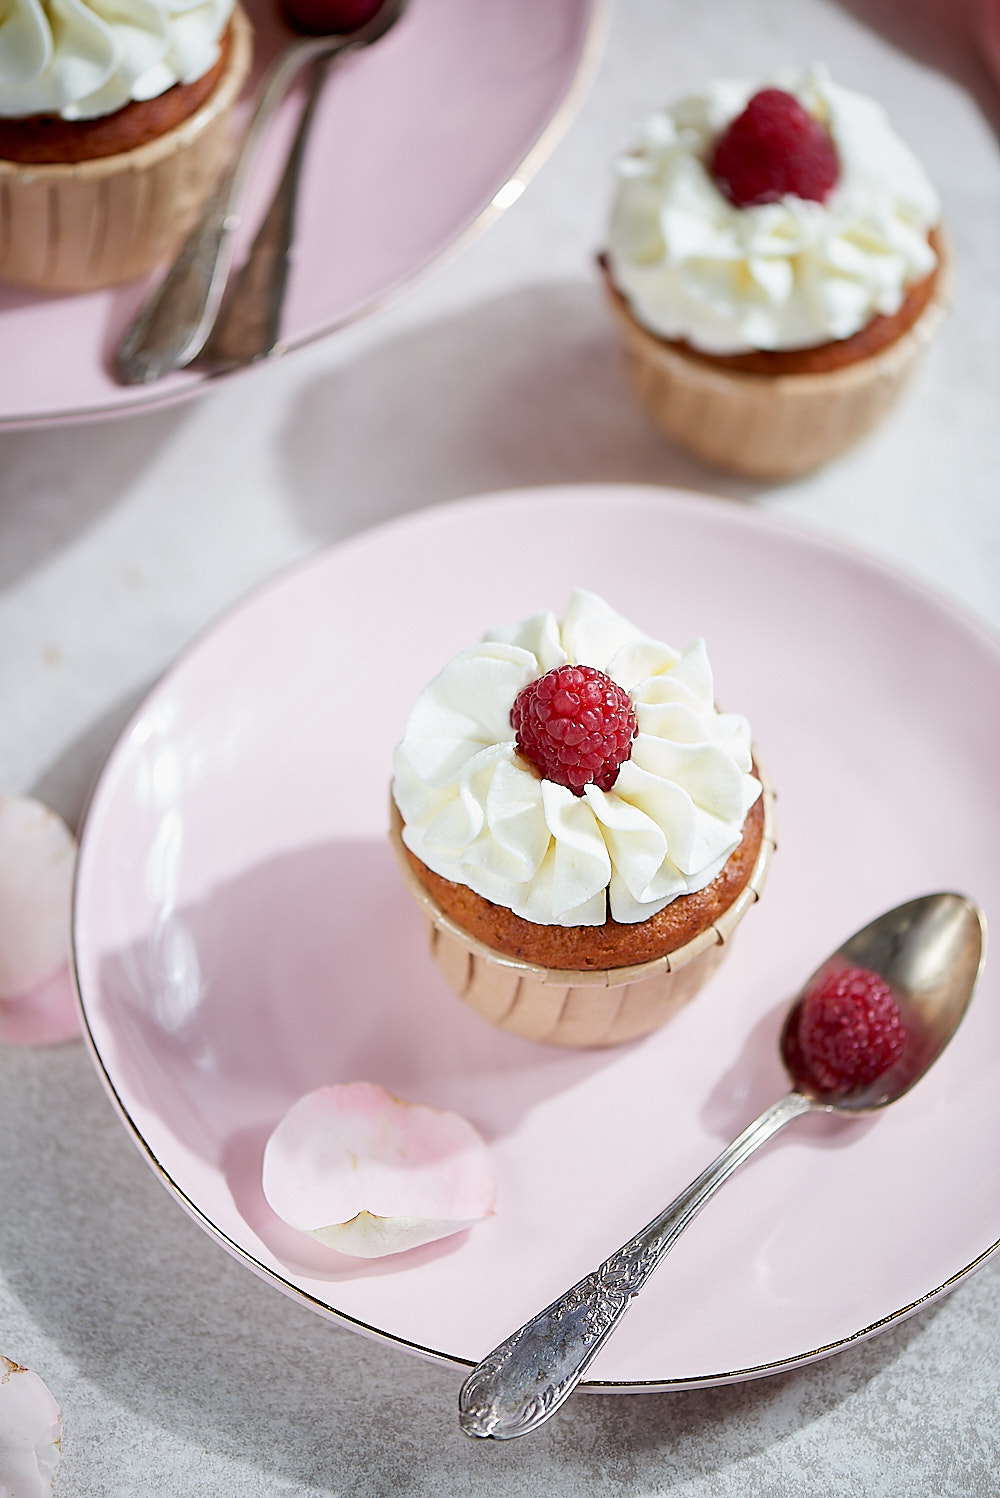 photo culinaire de cupcakes aux framboises sans gluten